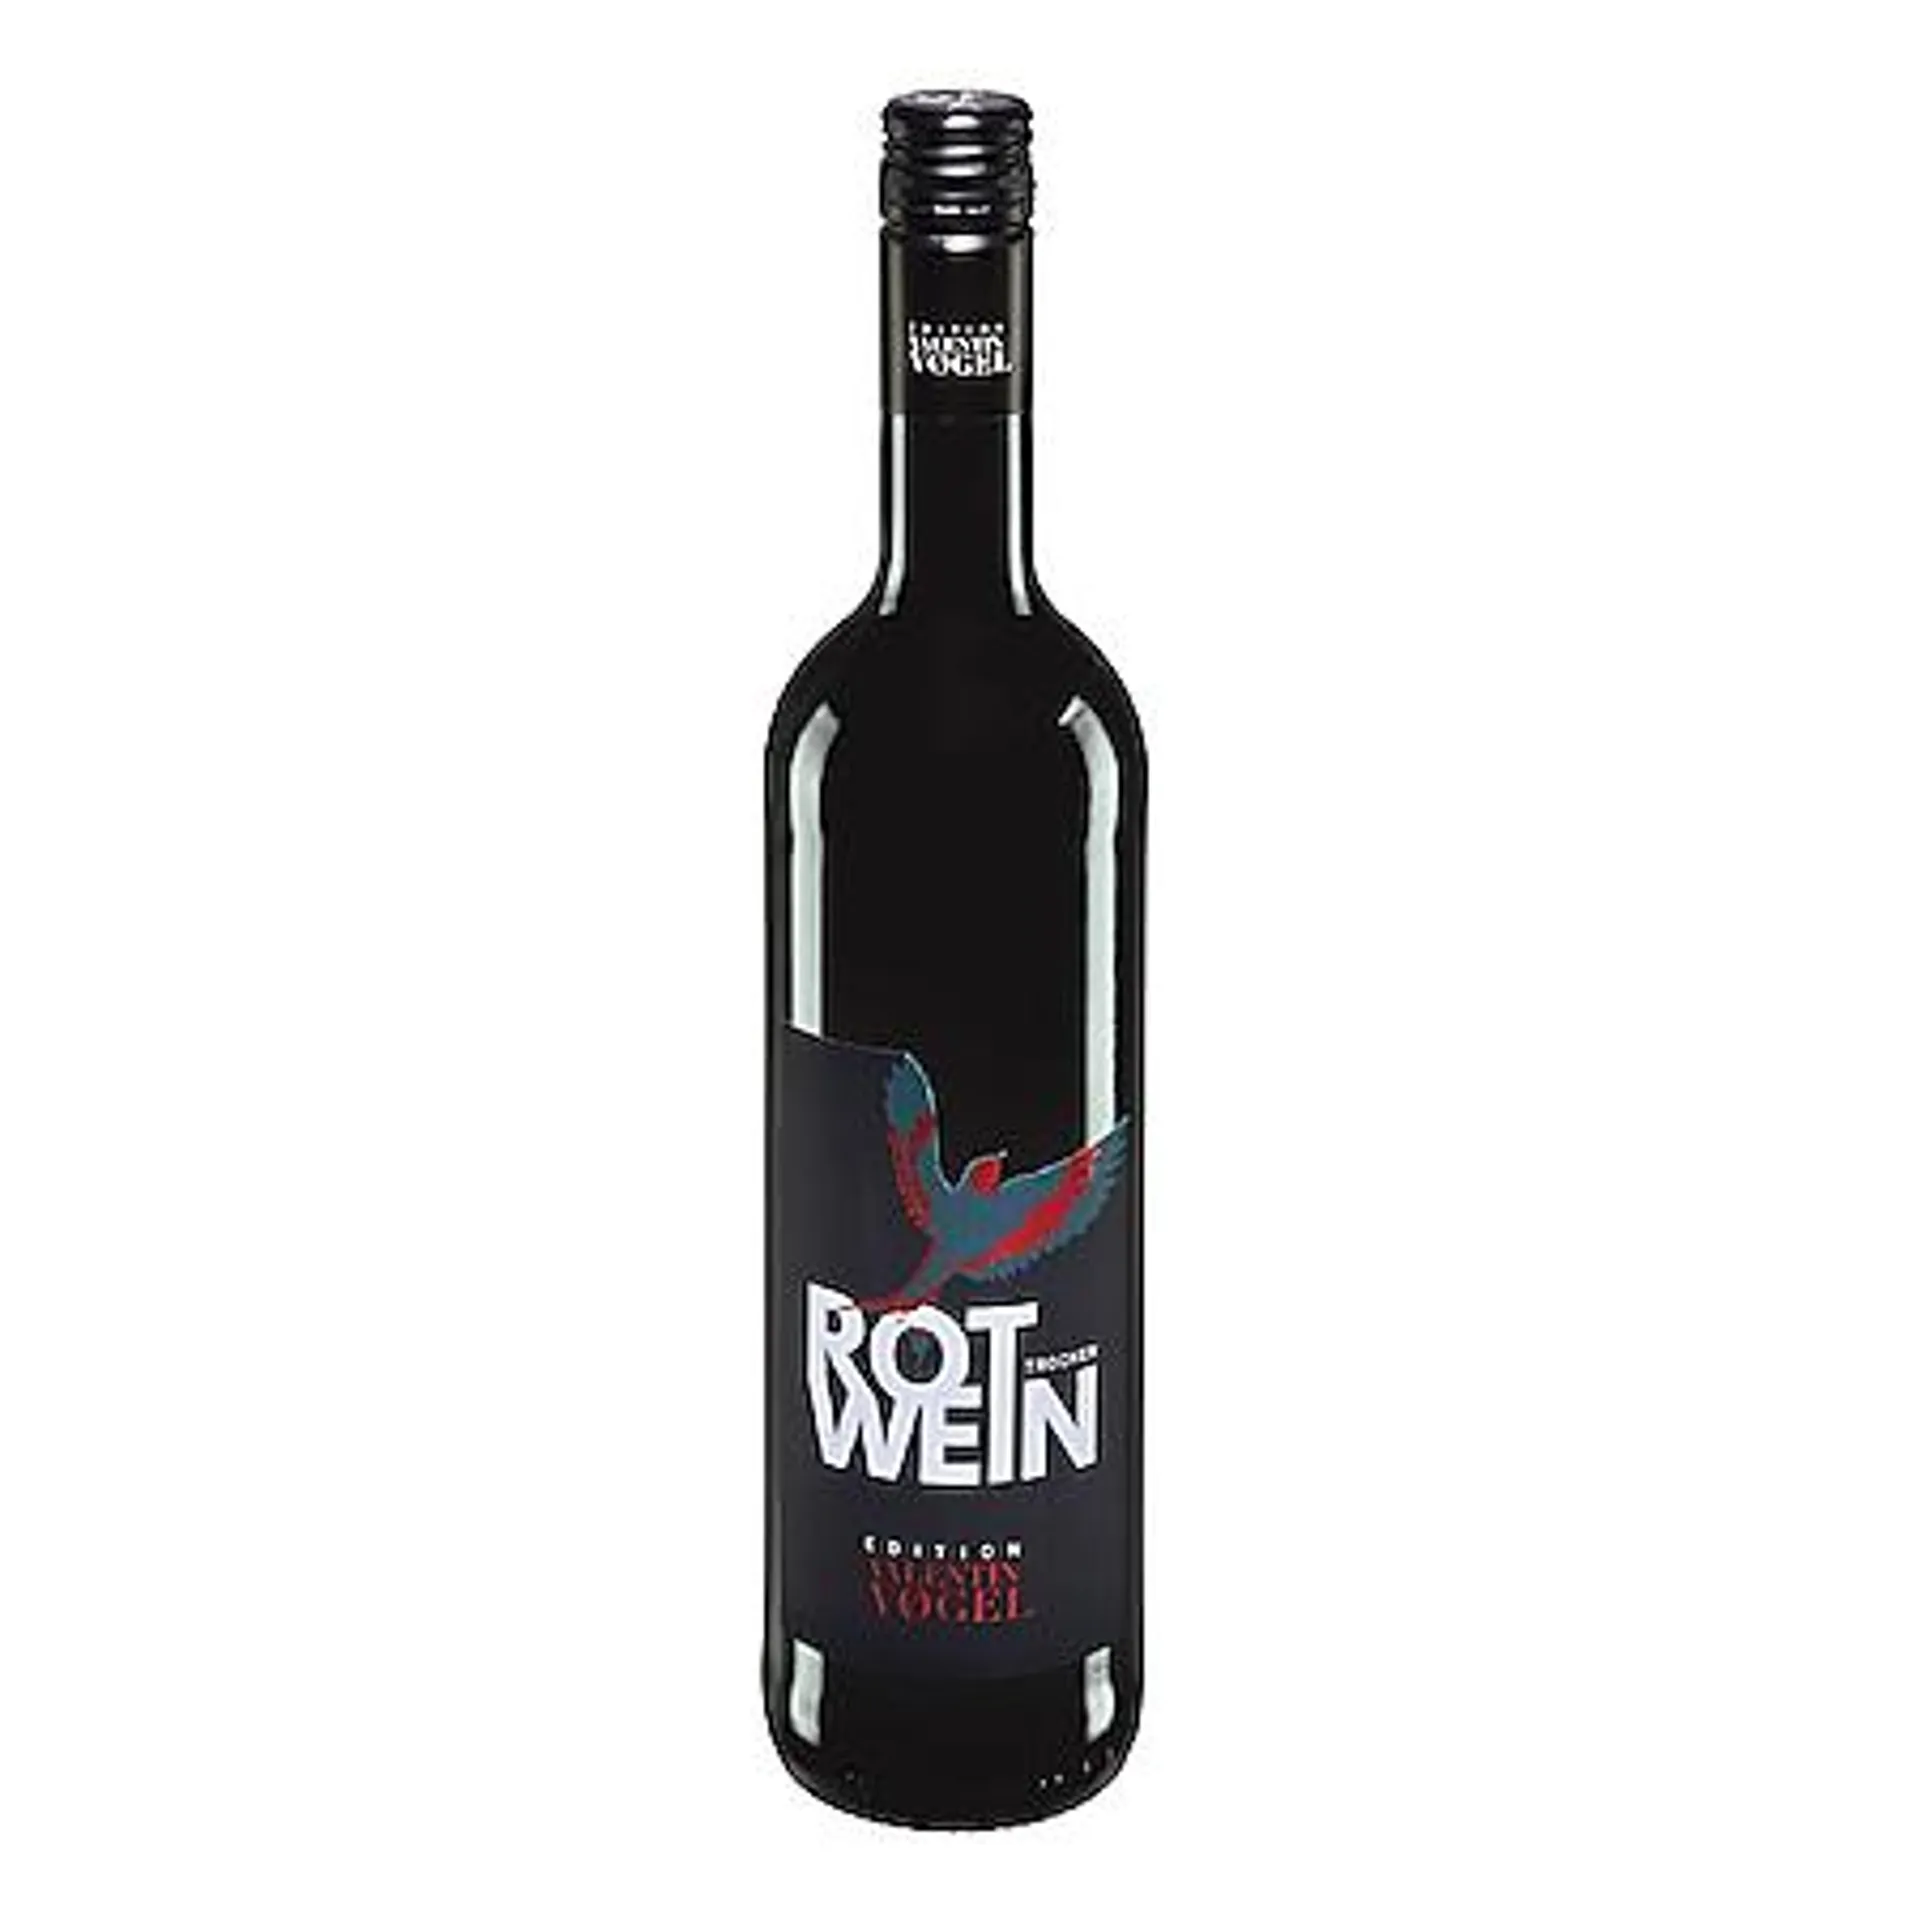 Edition Valentin Vogel Rotwein Qualitätswein trocken 13,0 % vol 0,75 Liter